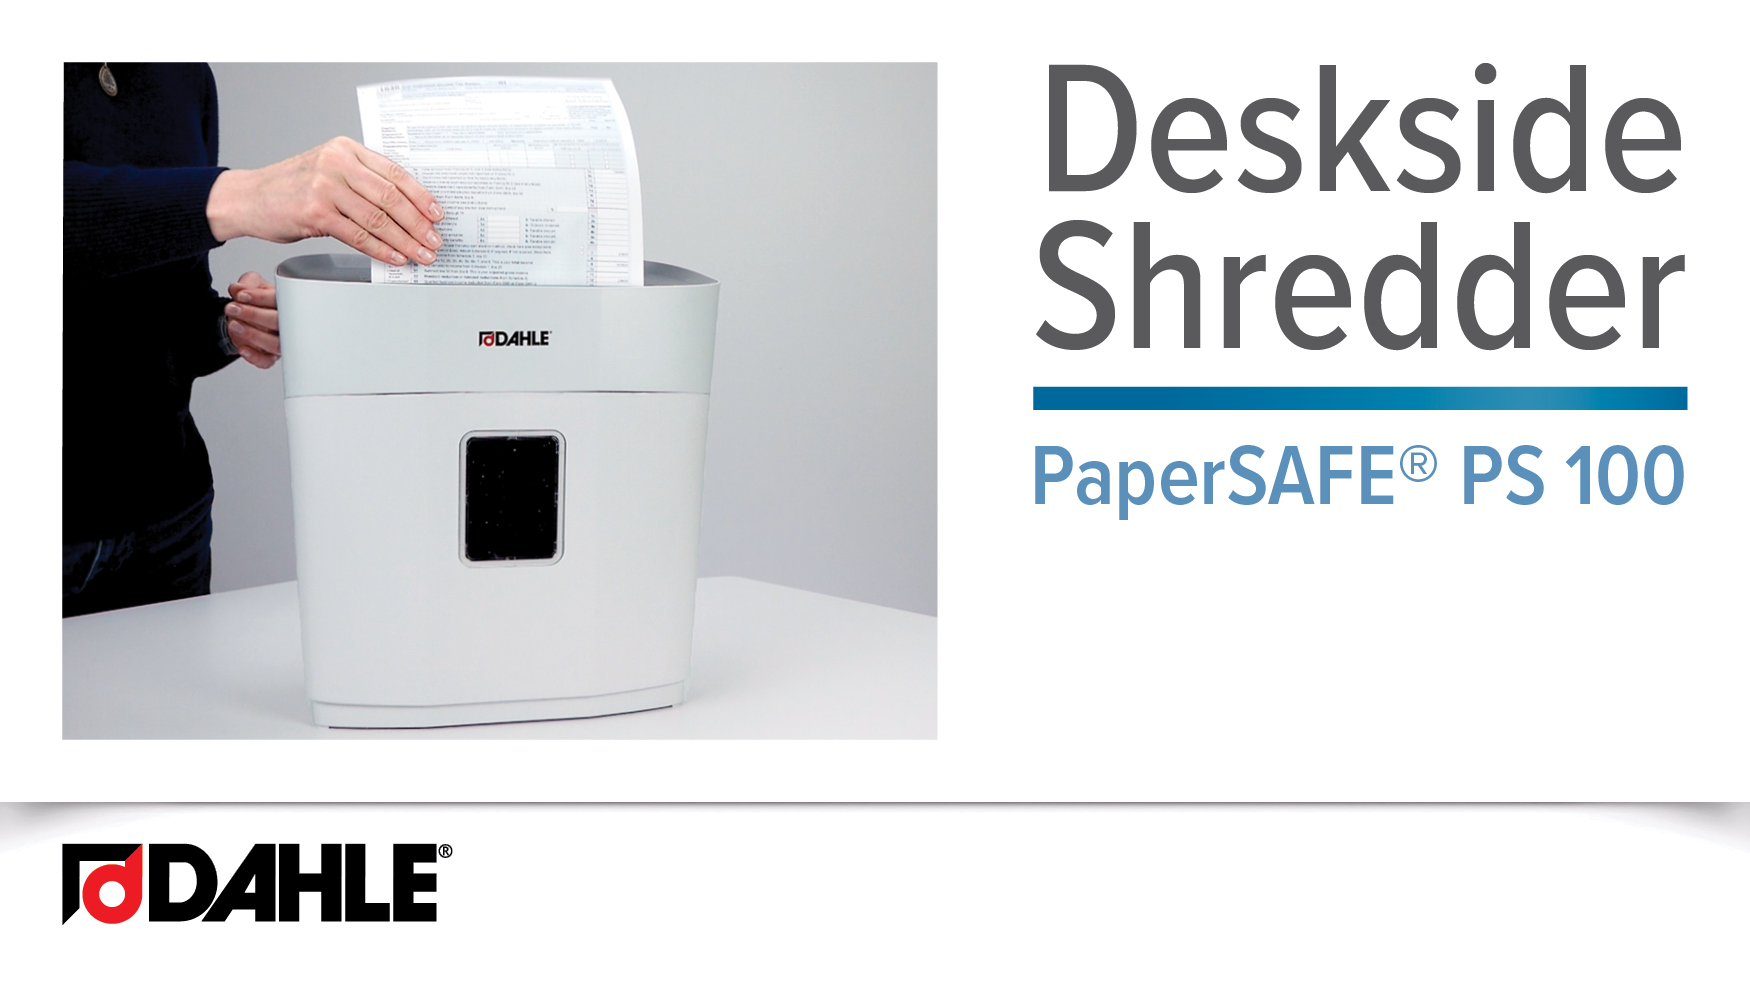 PaperSAFE® PS 100 Desk Side Shredder Video